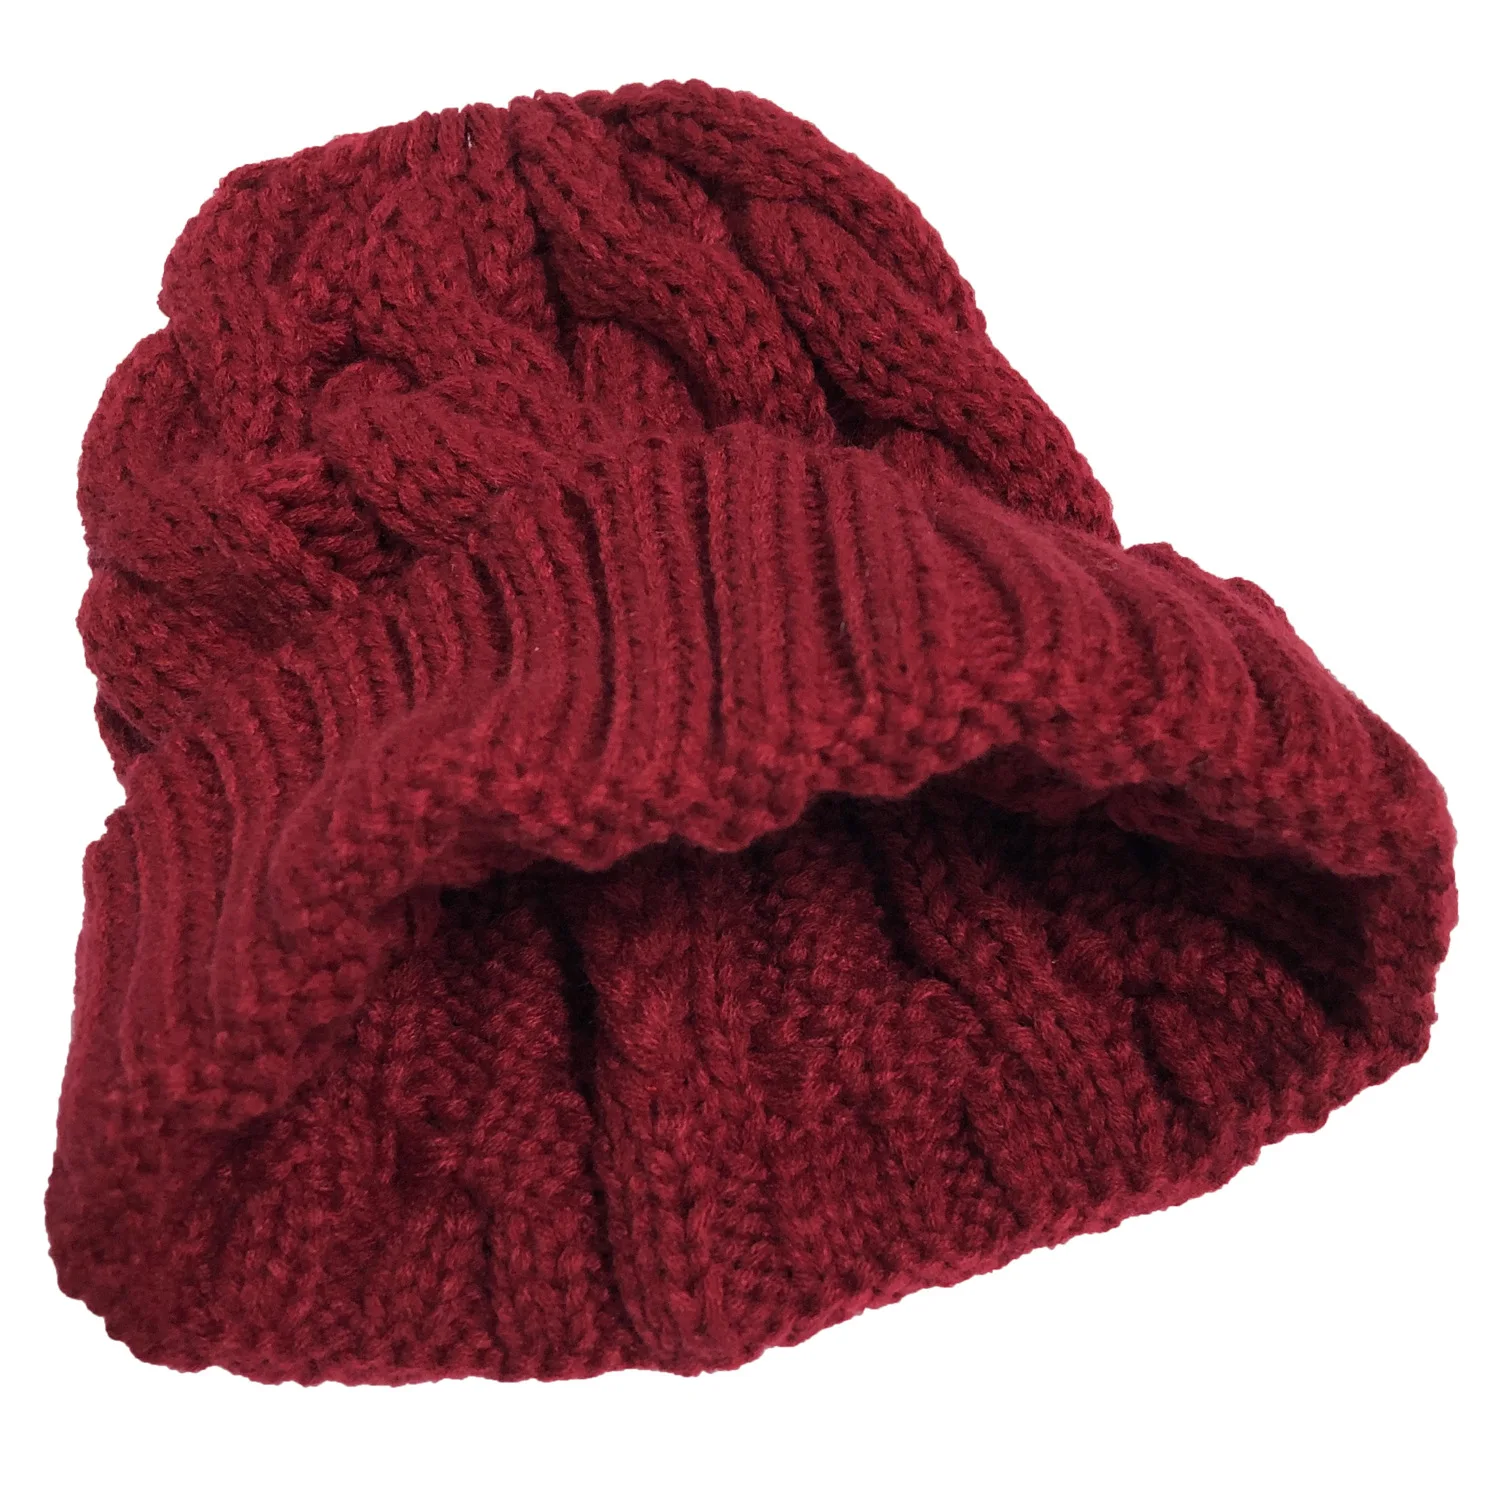 2019 Новая мода горячая Распродажа Женская шапка осень зима толстый теплый твист керлинг вязанный конский хвост шерстяной свитер шапка для